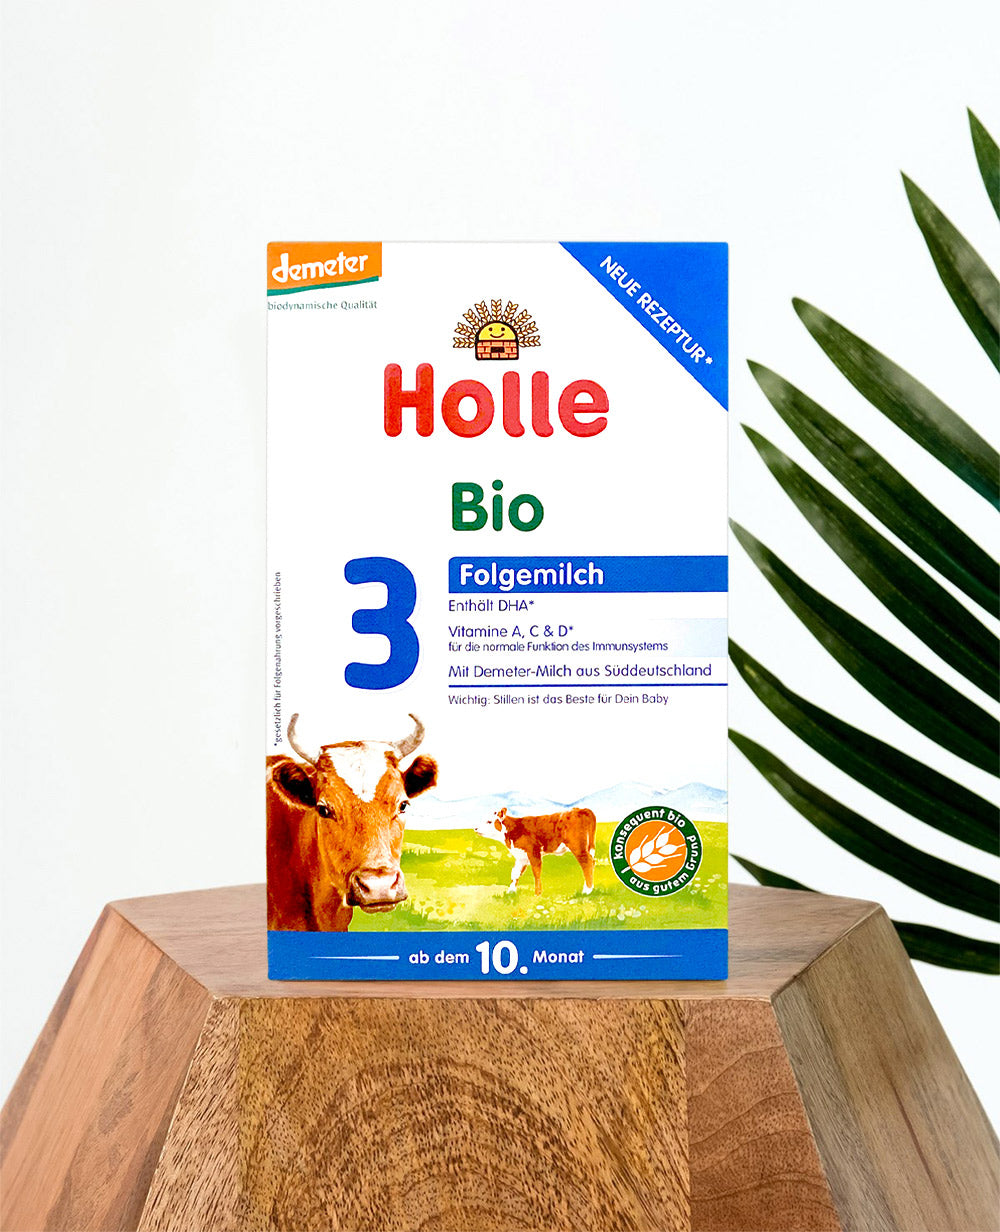 Holle Bio Stage 3 Organic Toddler Formula